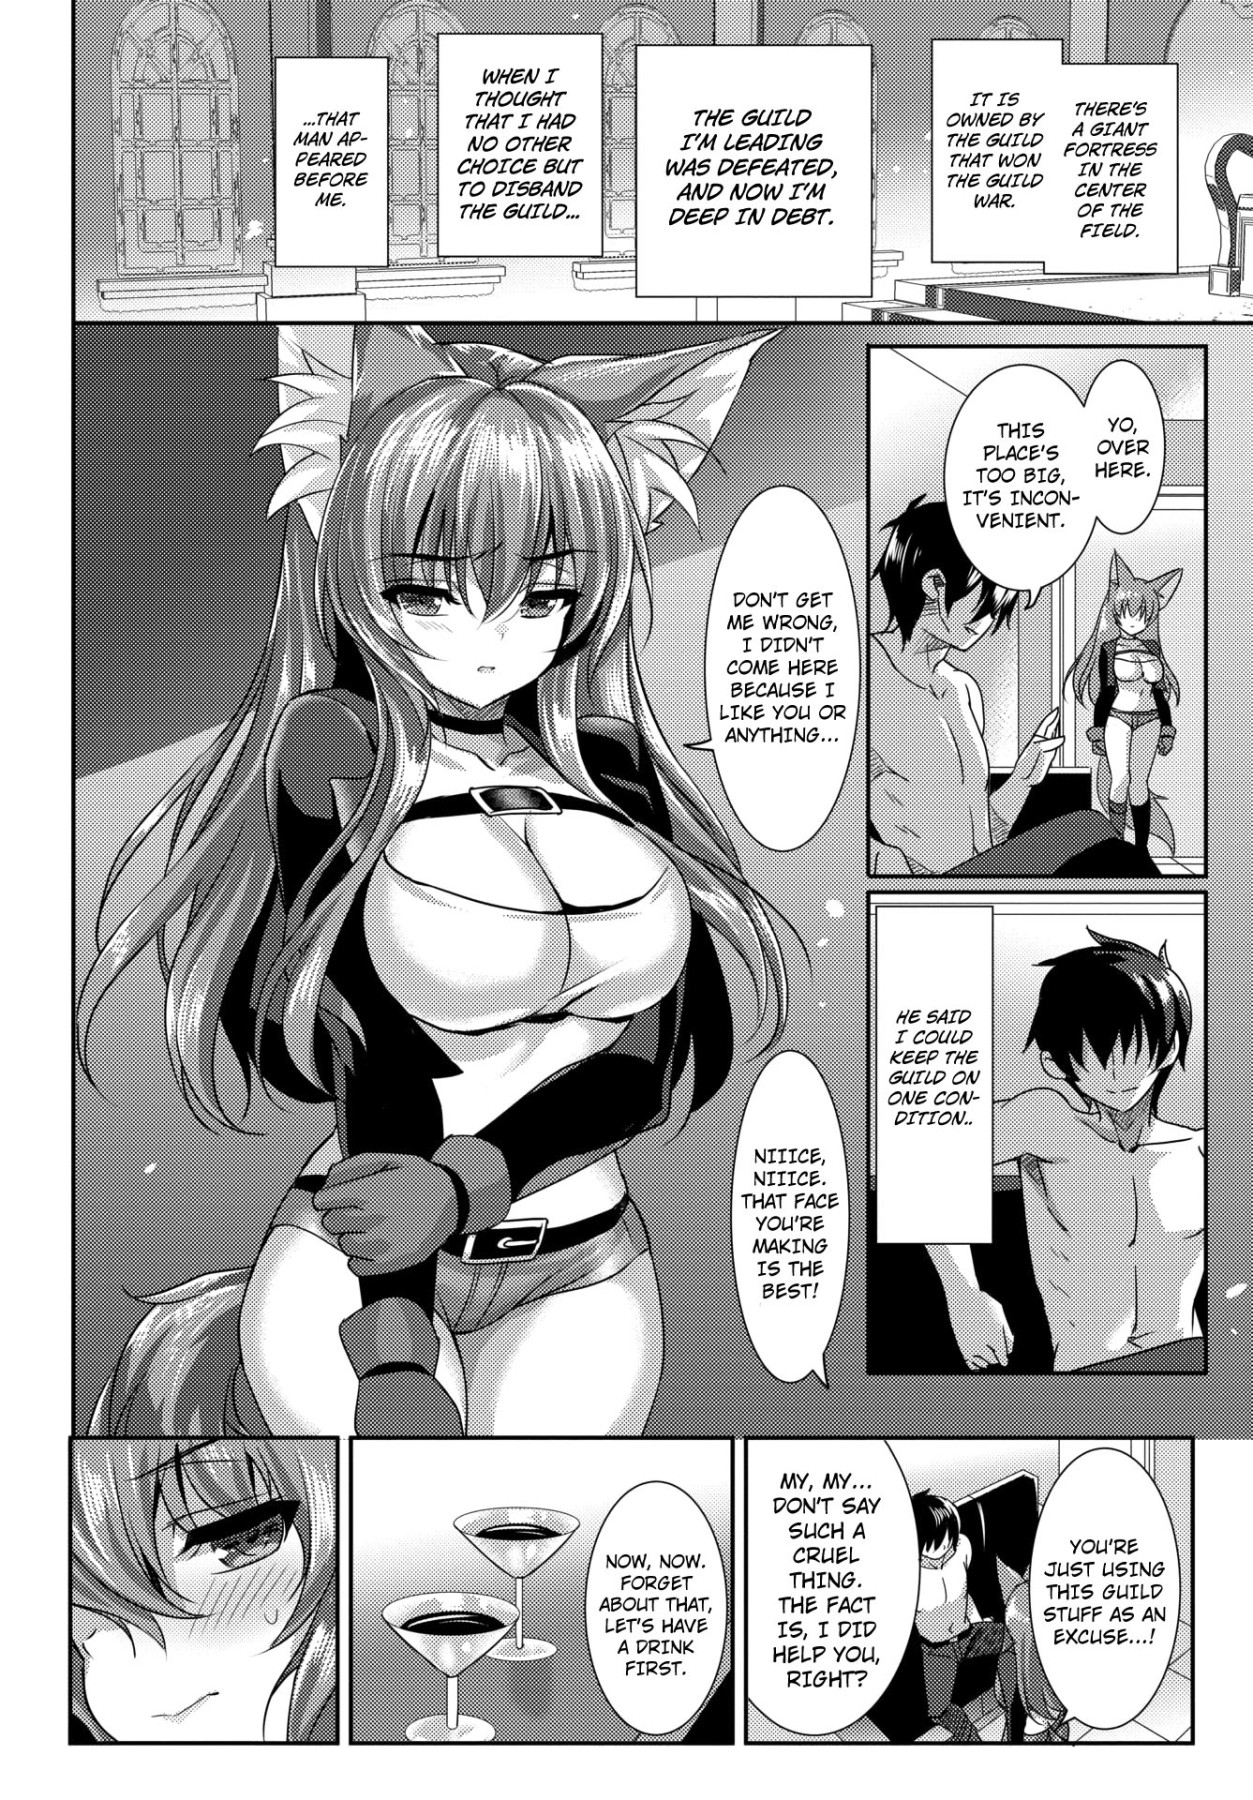 Hentai Manga Comic-How To Get a Fox-Read-2